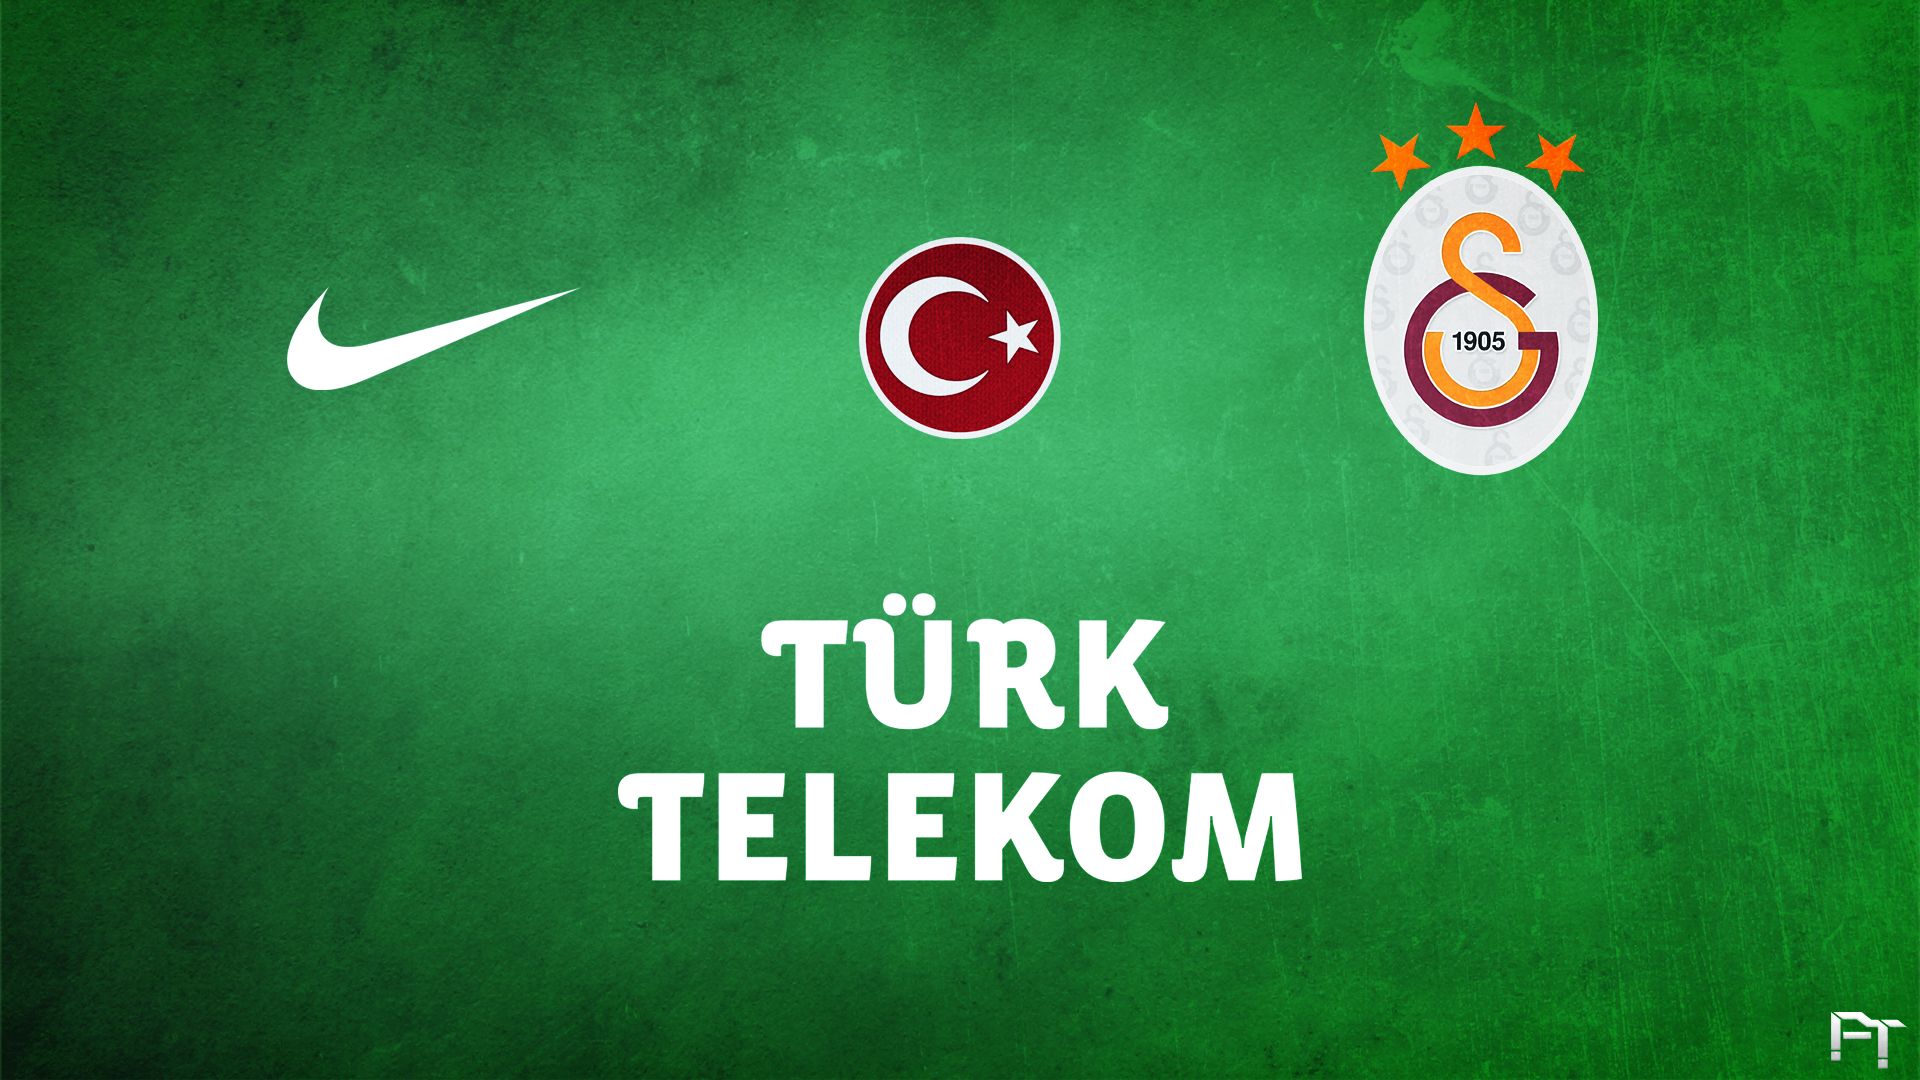 Descarga gratis la imagen Fútbol, Logo, Emblema, Deporte, Galatasaray S K en el escritorio de tu PC